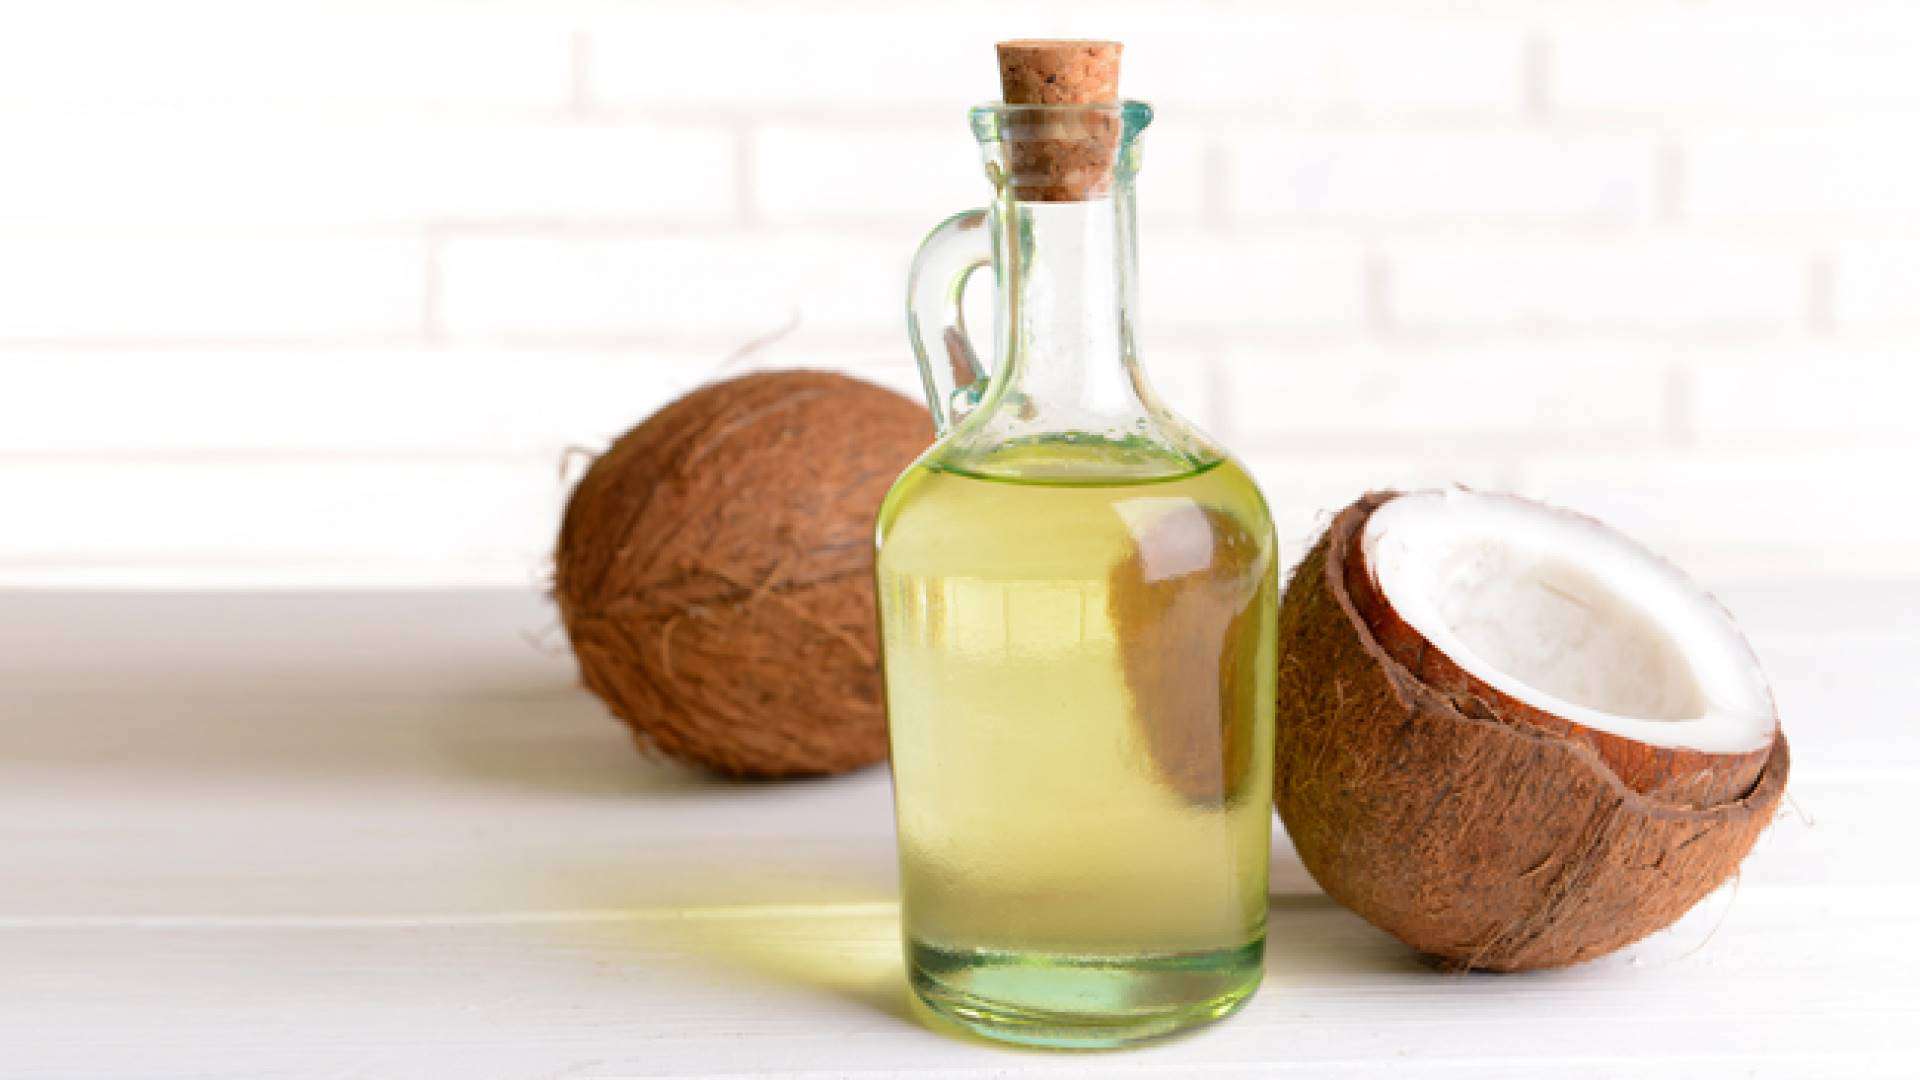 Anti-Rugas: Prepare colágeno caseiro com óleo de coco e aloe vera